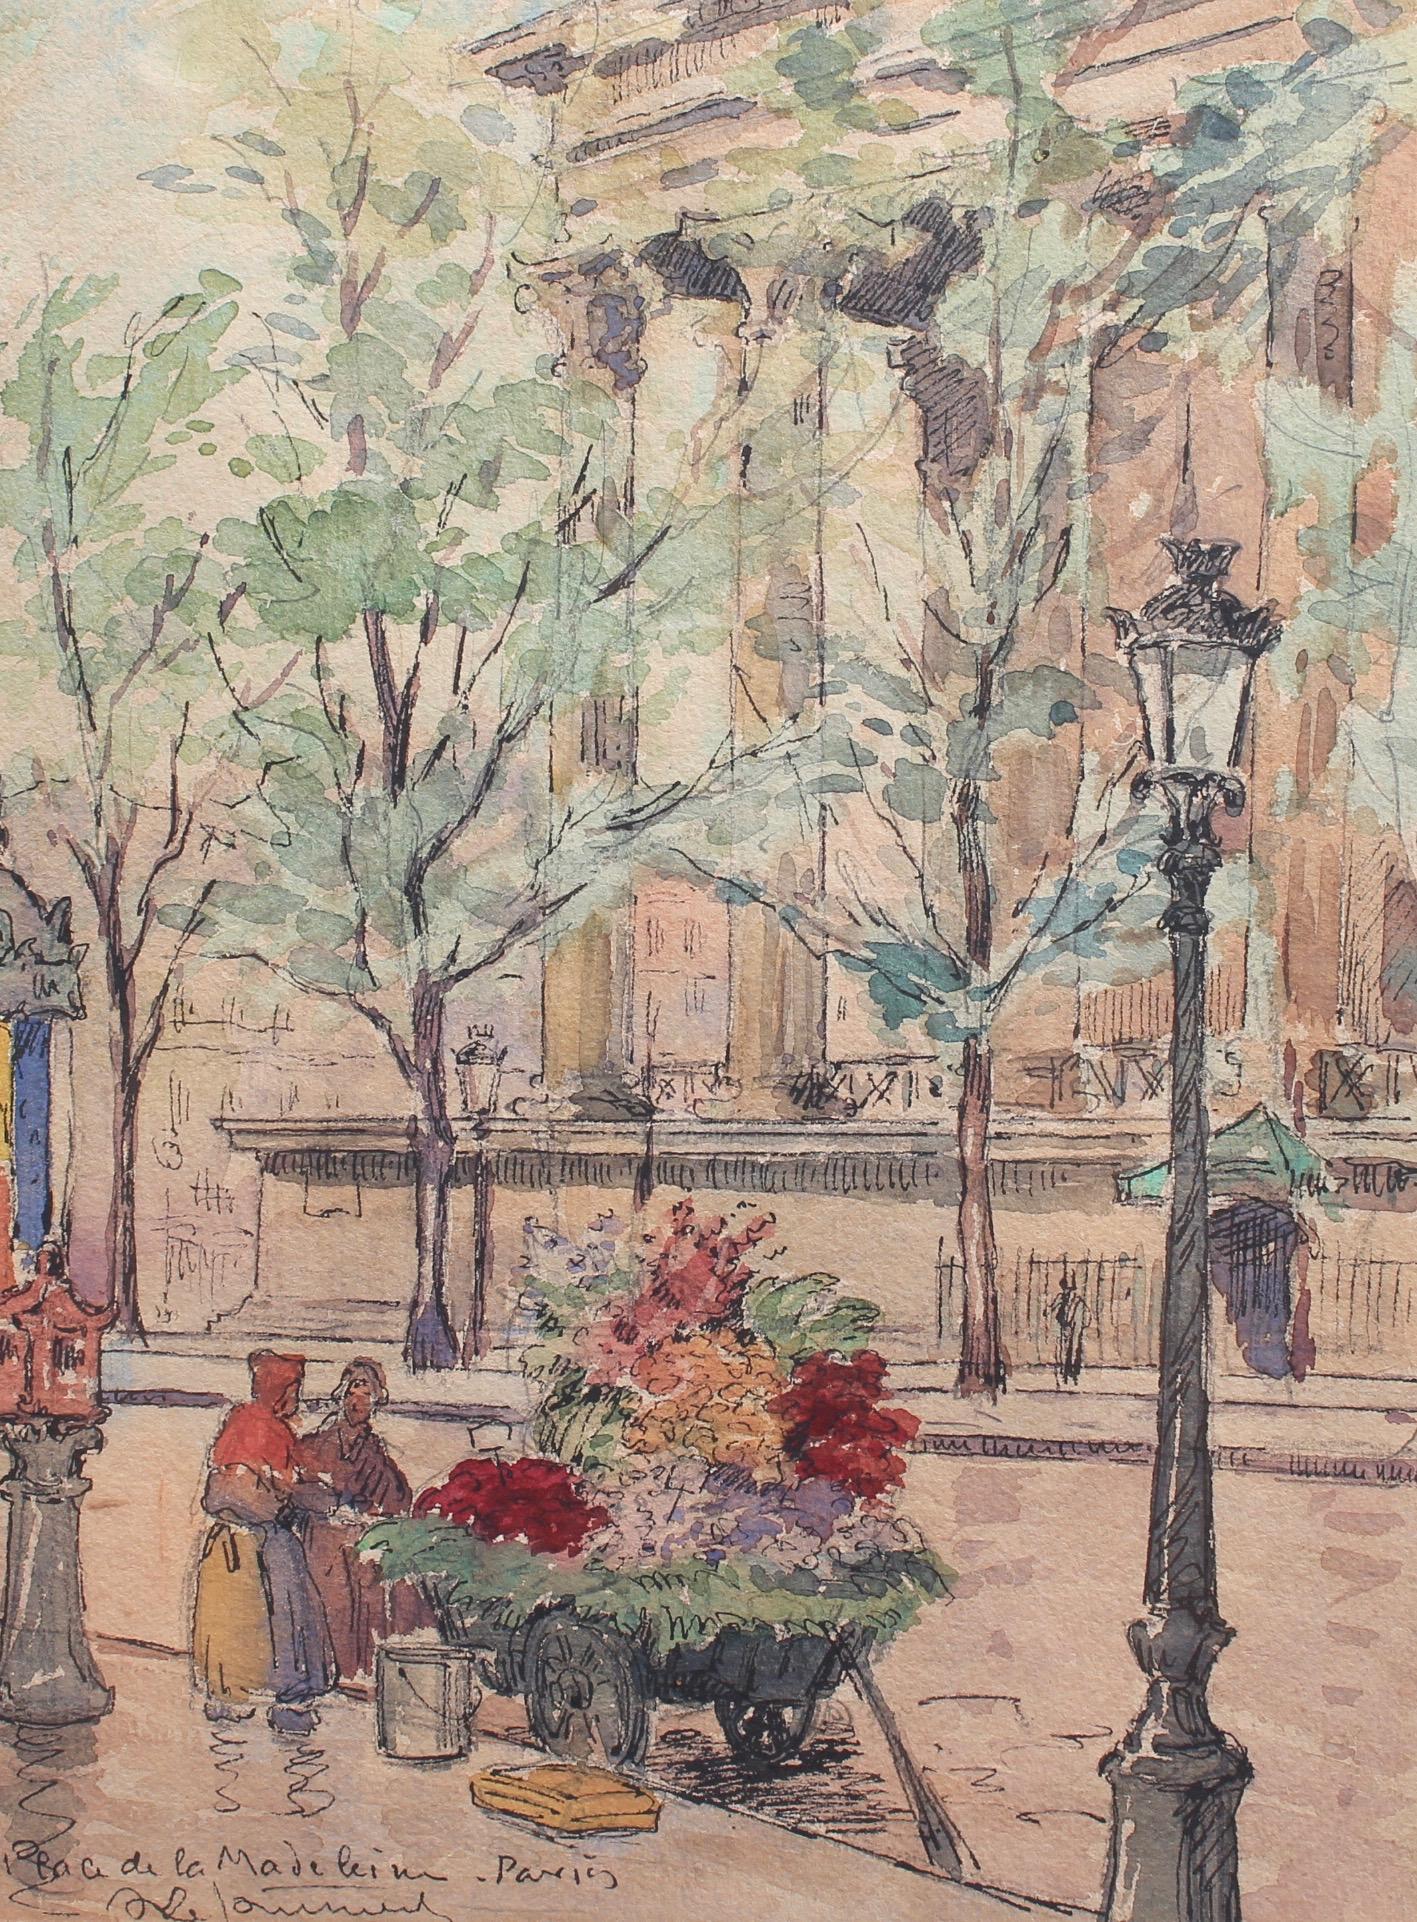 Unknown Figurative Art - Flower Seller, Place de la Madeleine - Paris 1890s